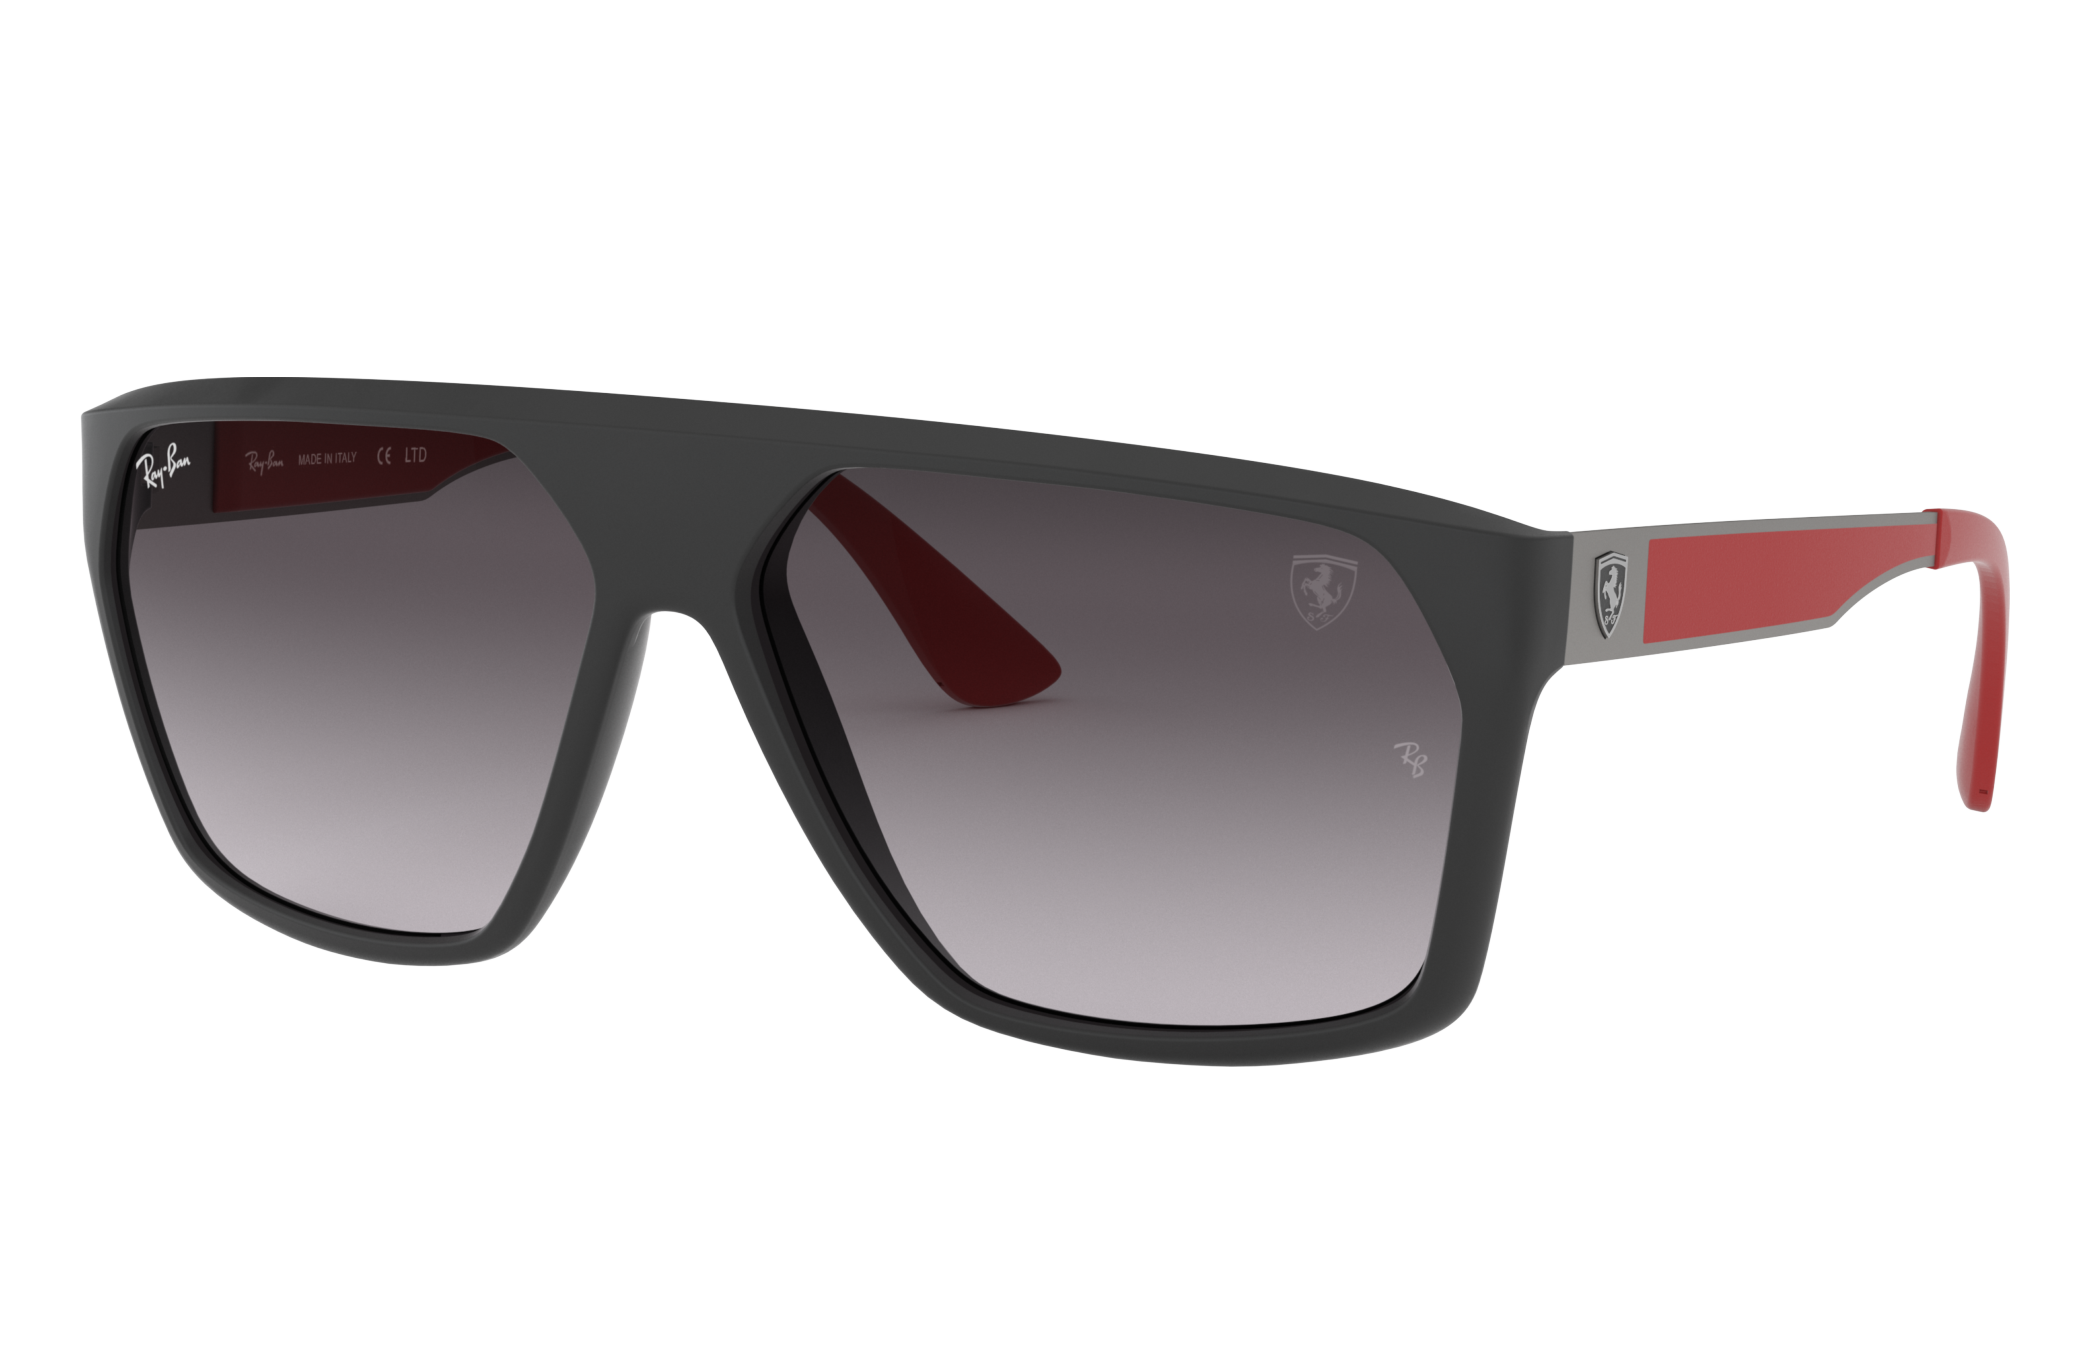 Scuderia Ferrari Spain Limited Edition Sunglasses in Preto and Cinzento |  Ray-Ban®